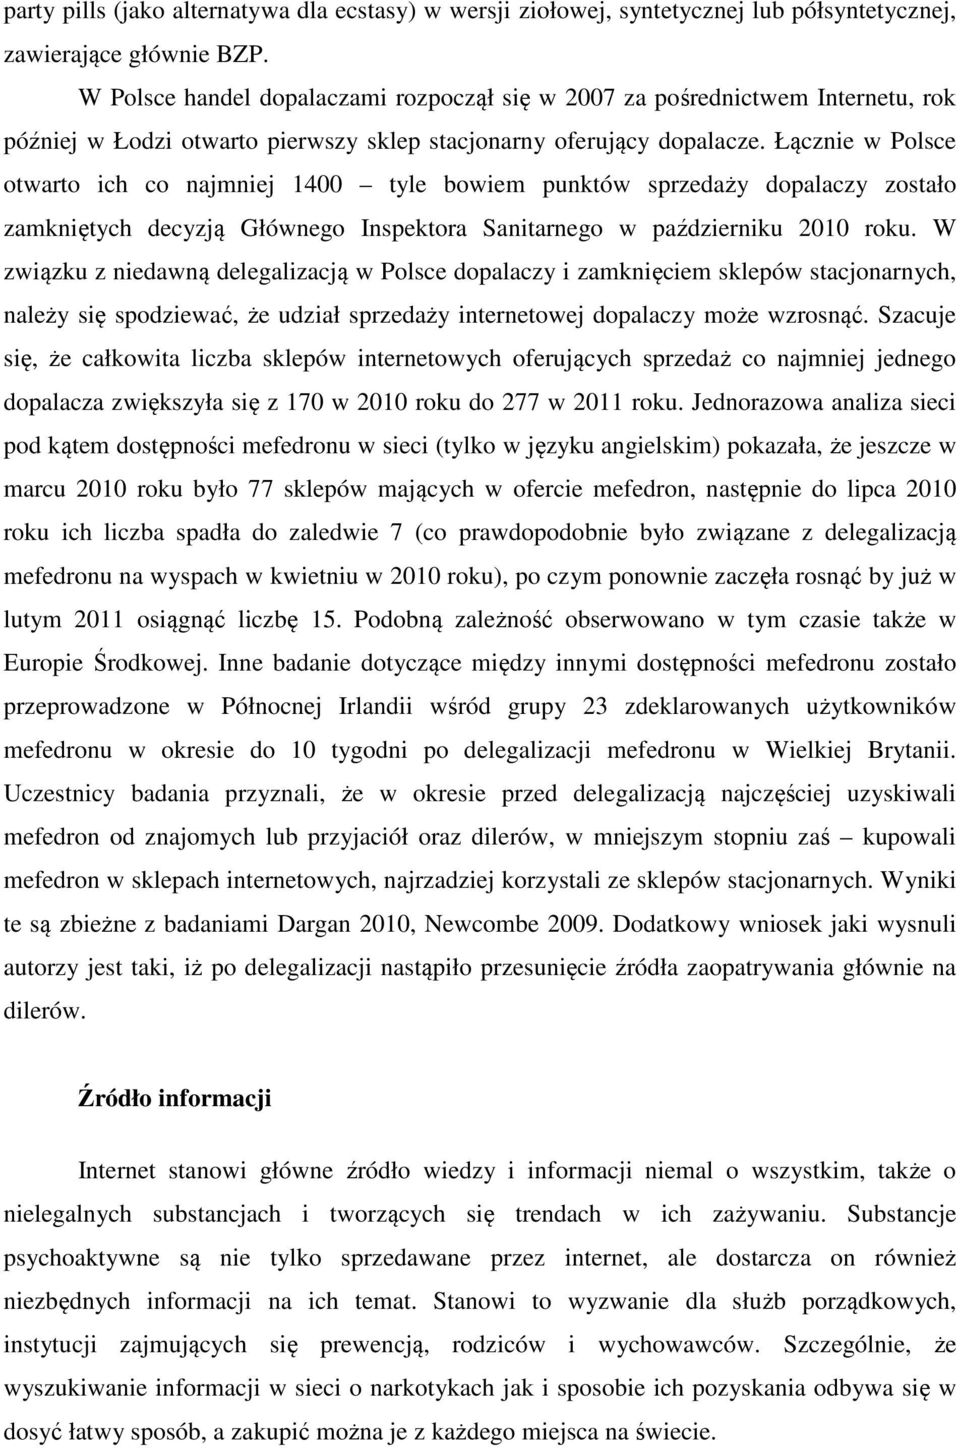 Łącznie w Polsce otwarto ich co najmniej 1400 tyle bowiem punktów sprzedaży dopalaczy zostało zamkniętych decyzją Głównego Inspektora Sanitarnego w październiku 2010 roku.